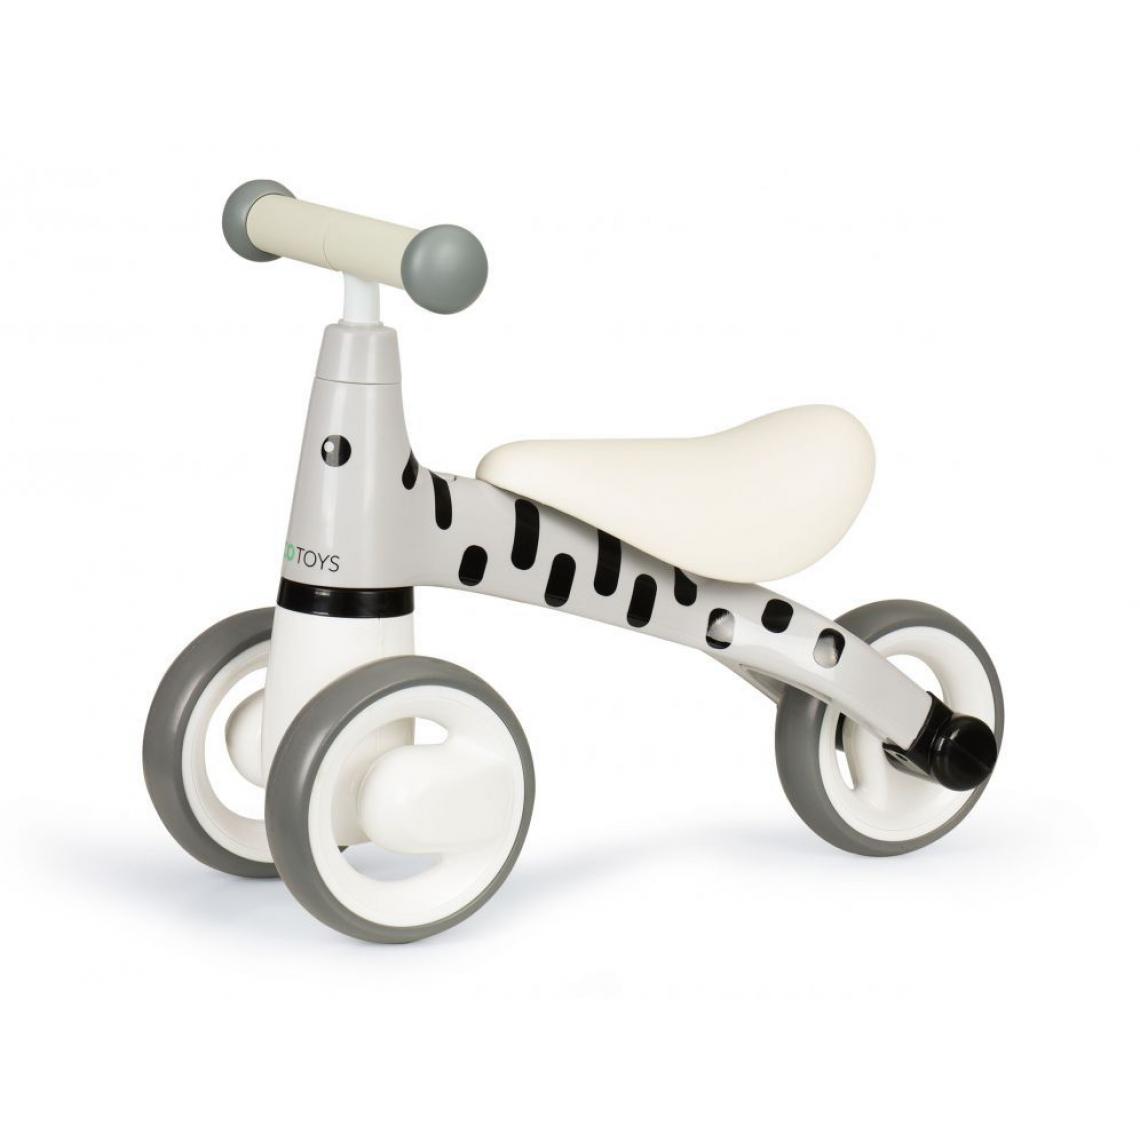 Hucoco - MSTORE - Draisienne tricycle - 12m+ - Siège profilé - Vélo pour enfants - Gris - Voitures